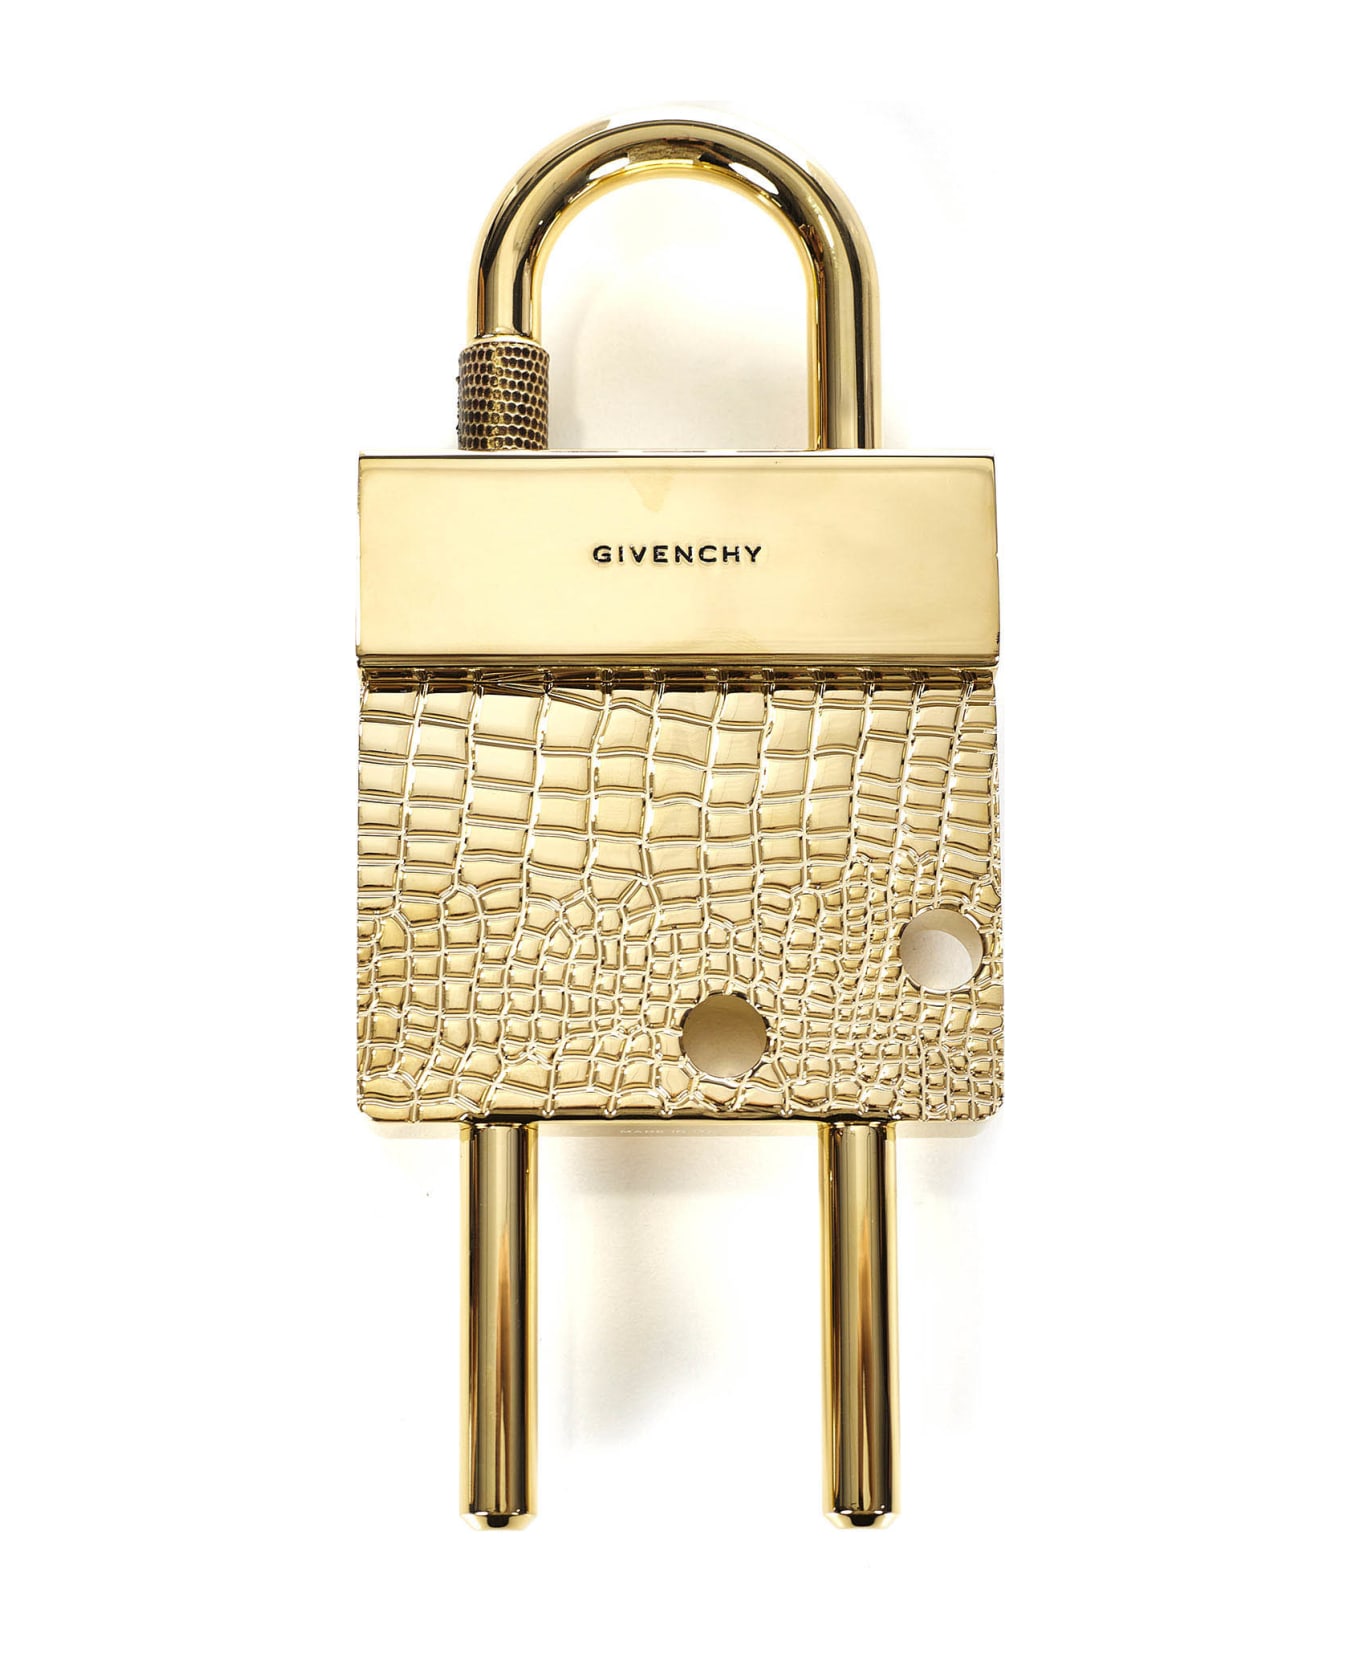 Givenchy Maxi Padlock Key Ring - Golden キーリング